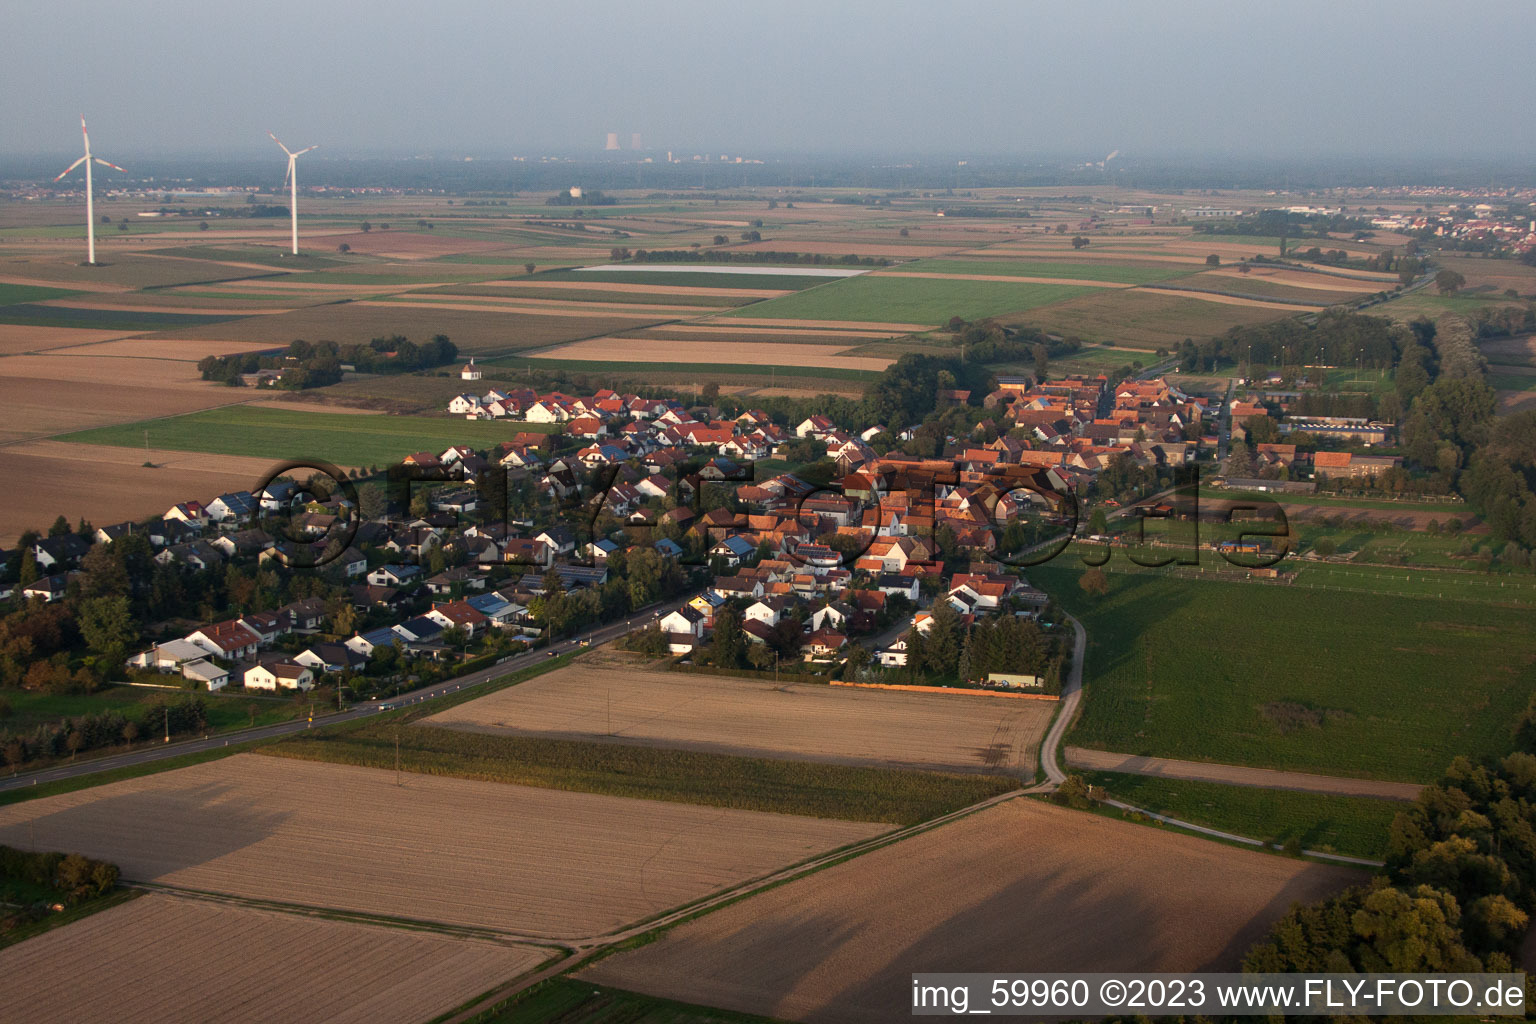 Drone recording of Herxheimweyher in the state Rhineland-Palatinate, Germany